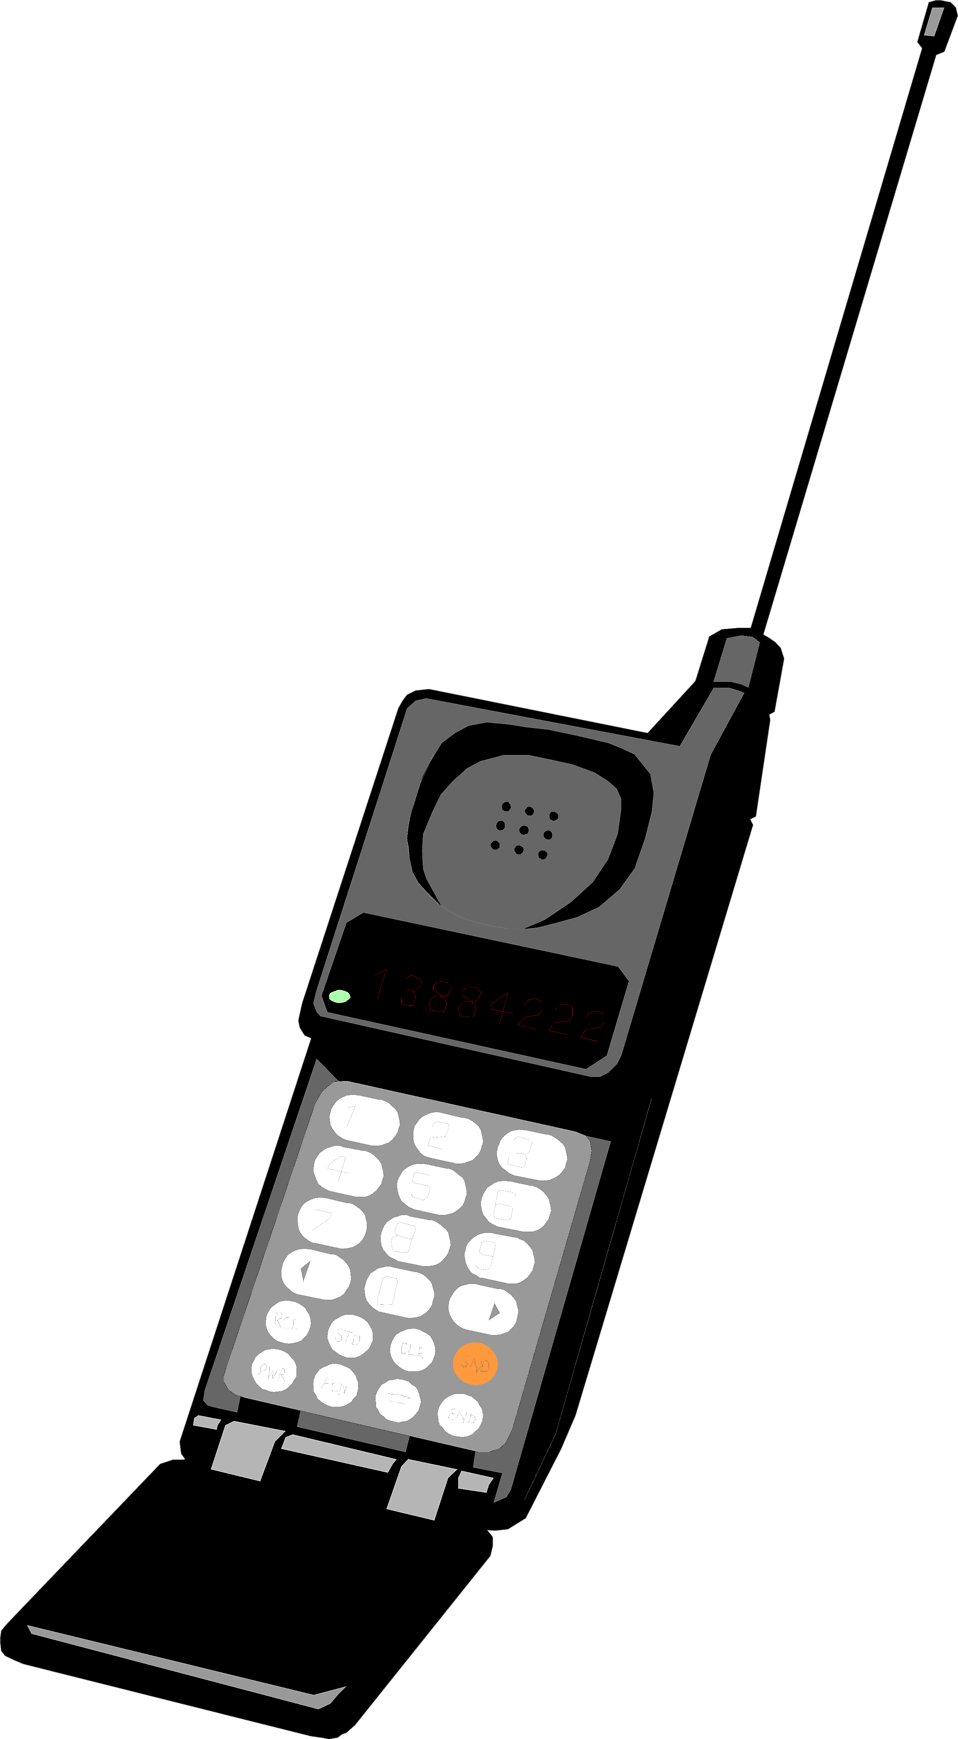 Motorola MICROTAC 9800x. Сотовый телефон с выдвижной антенной. Мобильный радиотелефон с антенной. Мобильник с антенной. Старый телефон с антенной